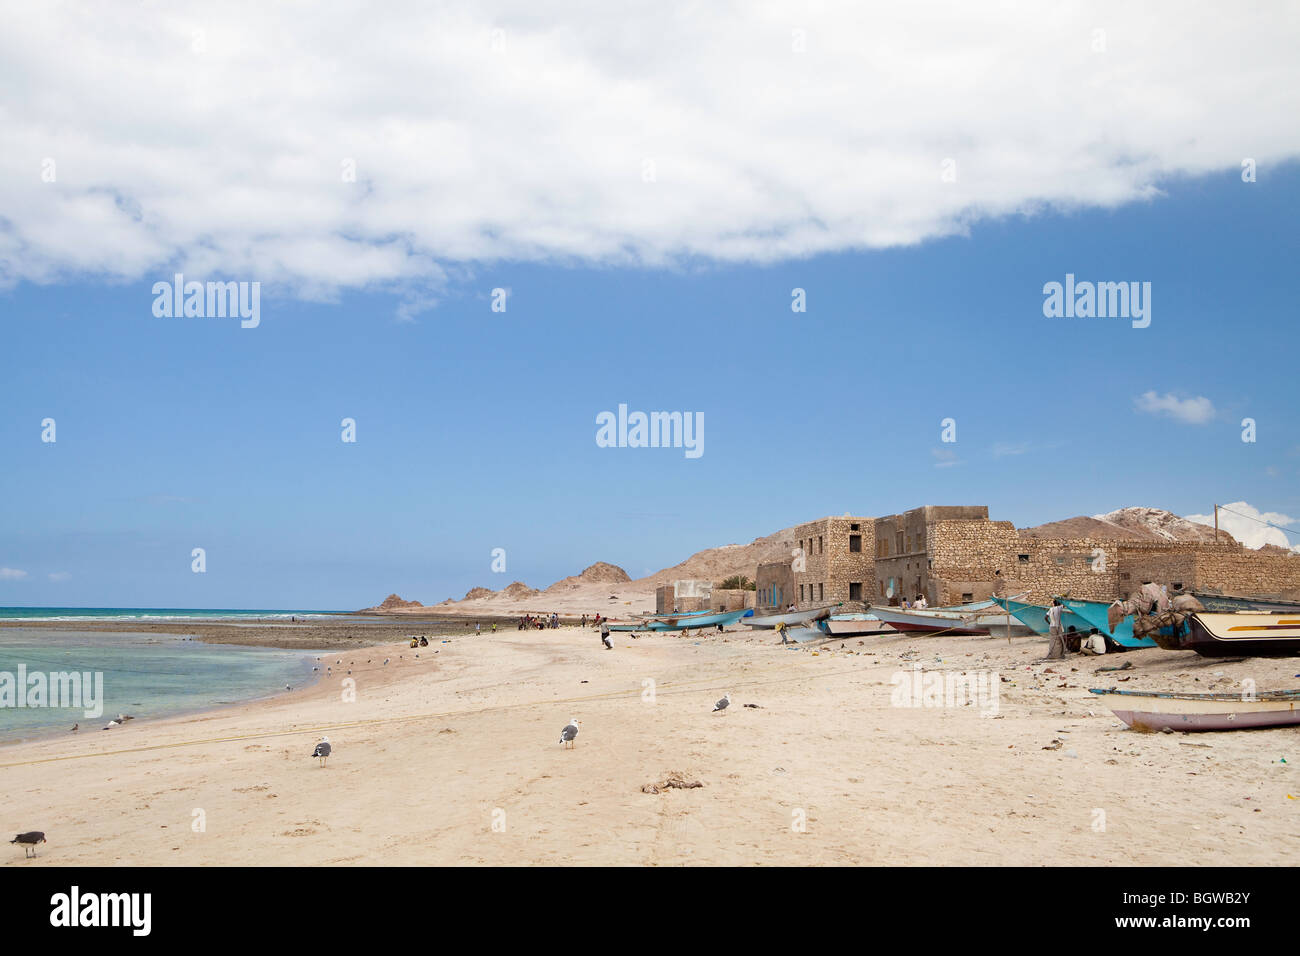 Qalansiah fishing village, Socotra Stock Photo